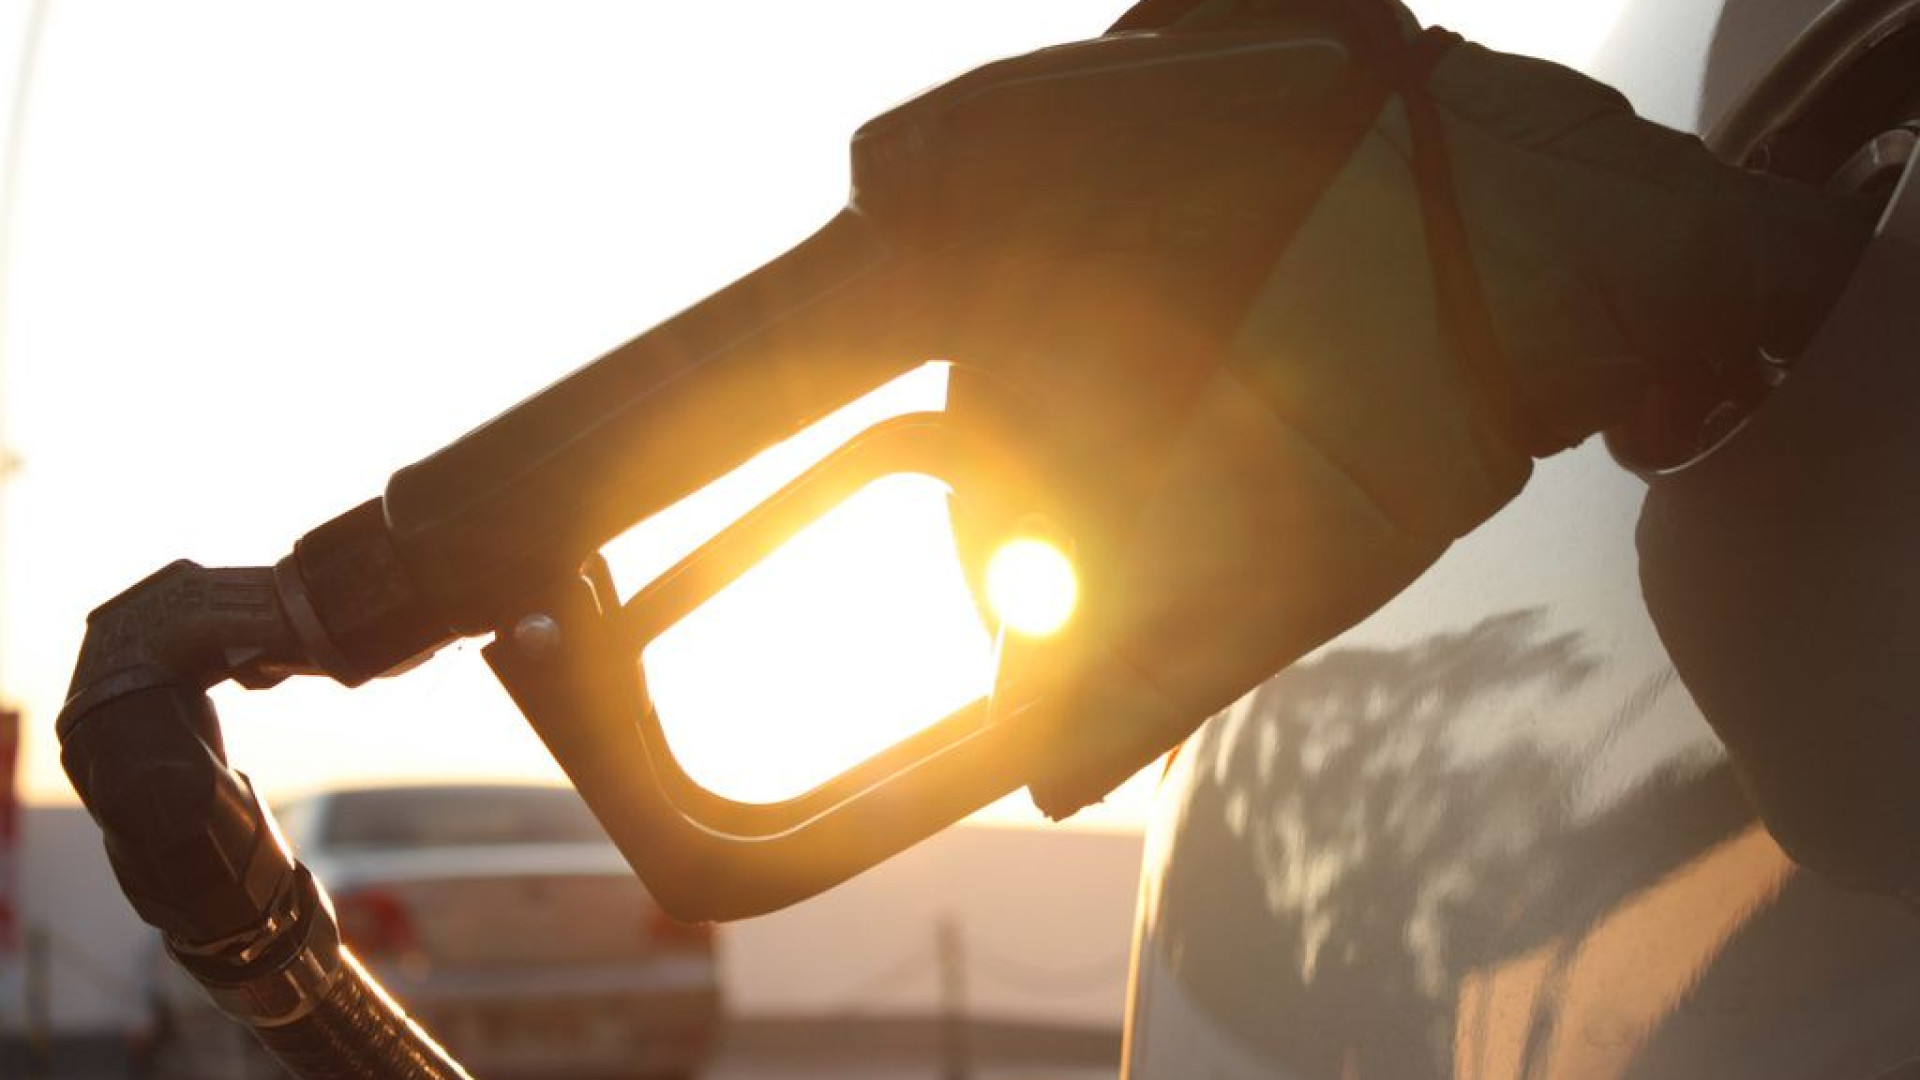 Brasil tem quarta gasolina mais cara da América do Sul, mostra ranking